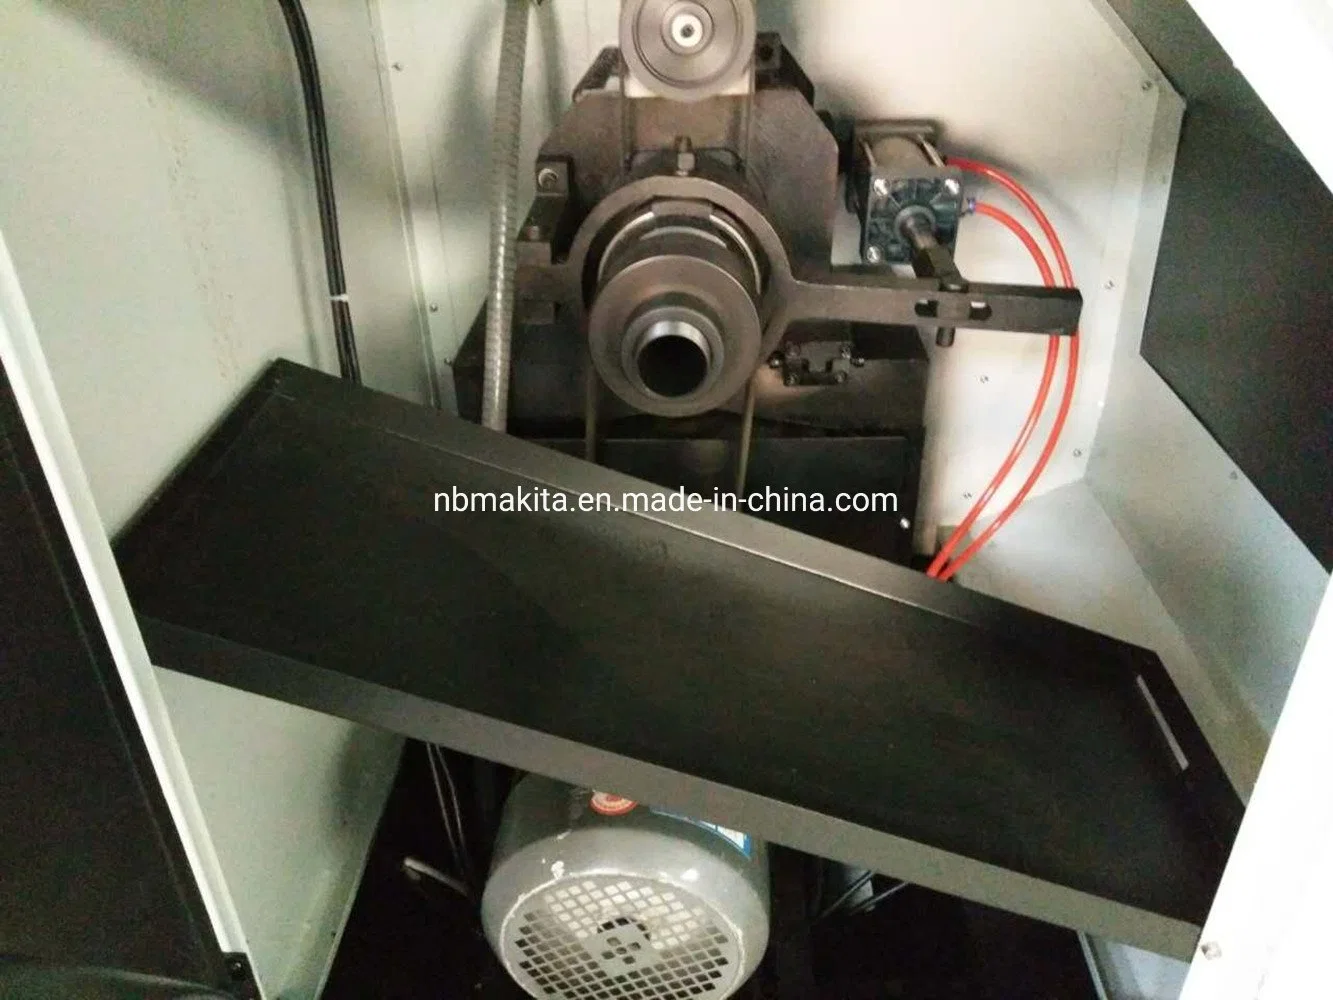 Venda a quente a alta rotação e alta precisão Hobby pequena máquina CNC Tool